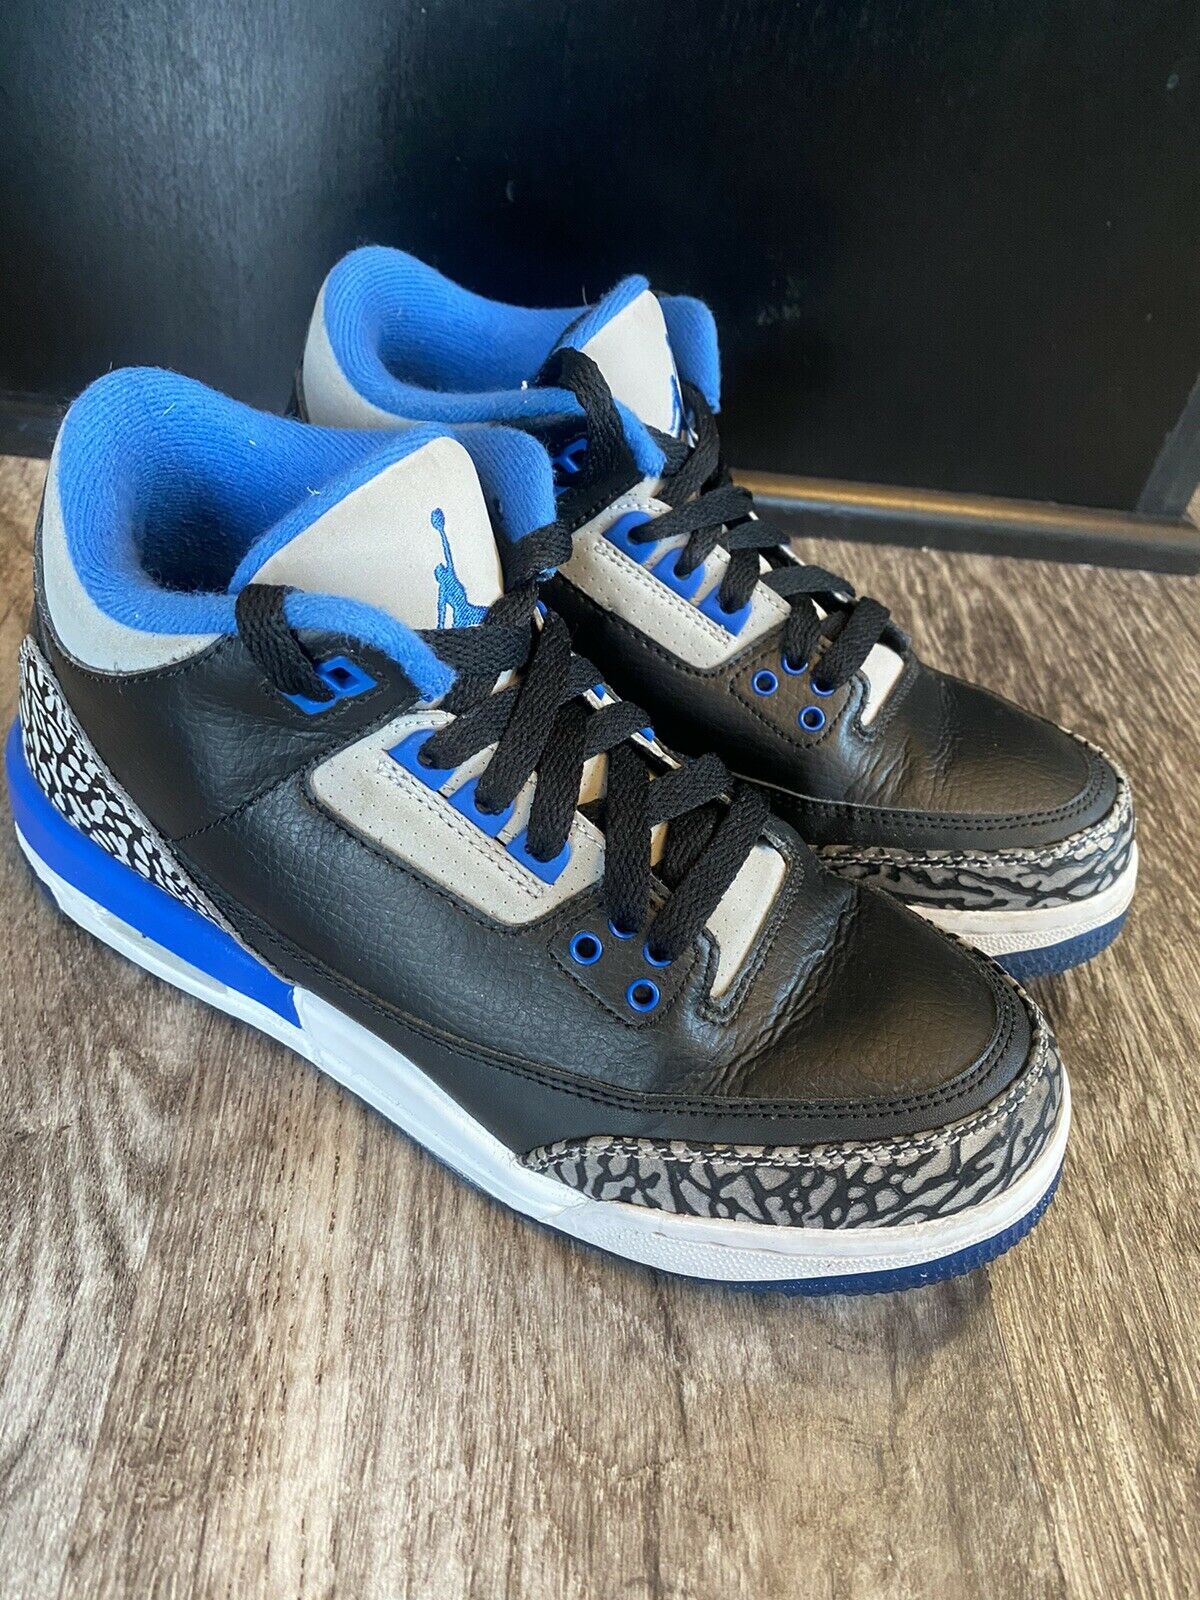 Nike Air Jordan 3 III Retro Sport Blue GS BG Shoes 6.5Y Black (398614-007)